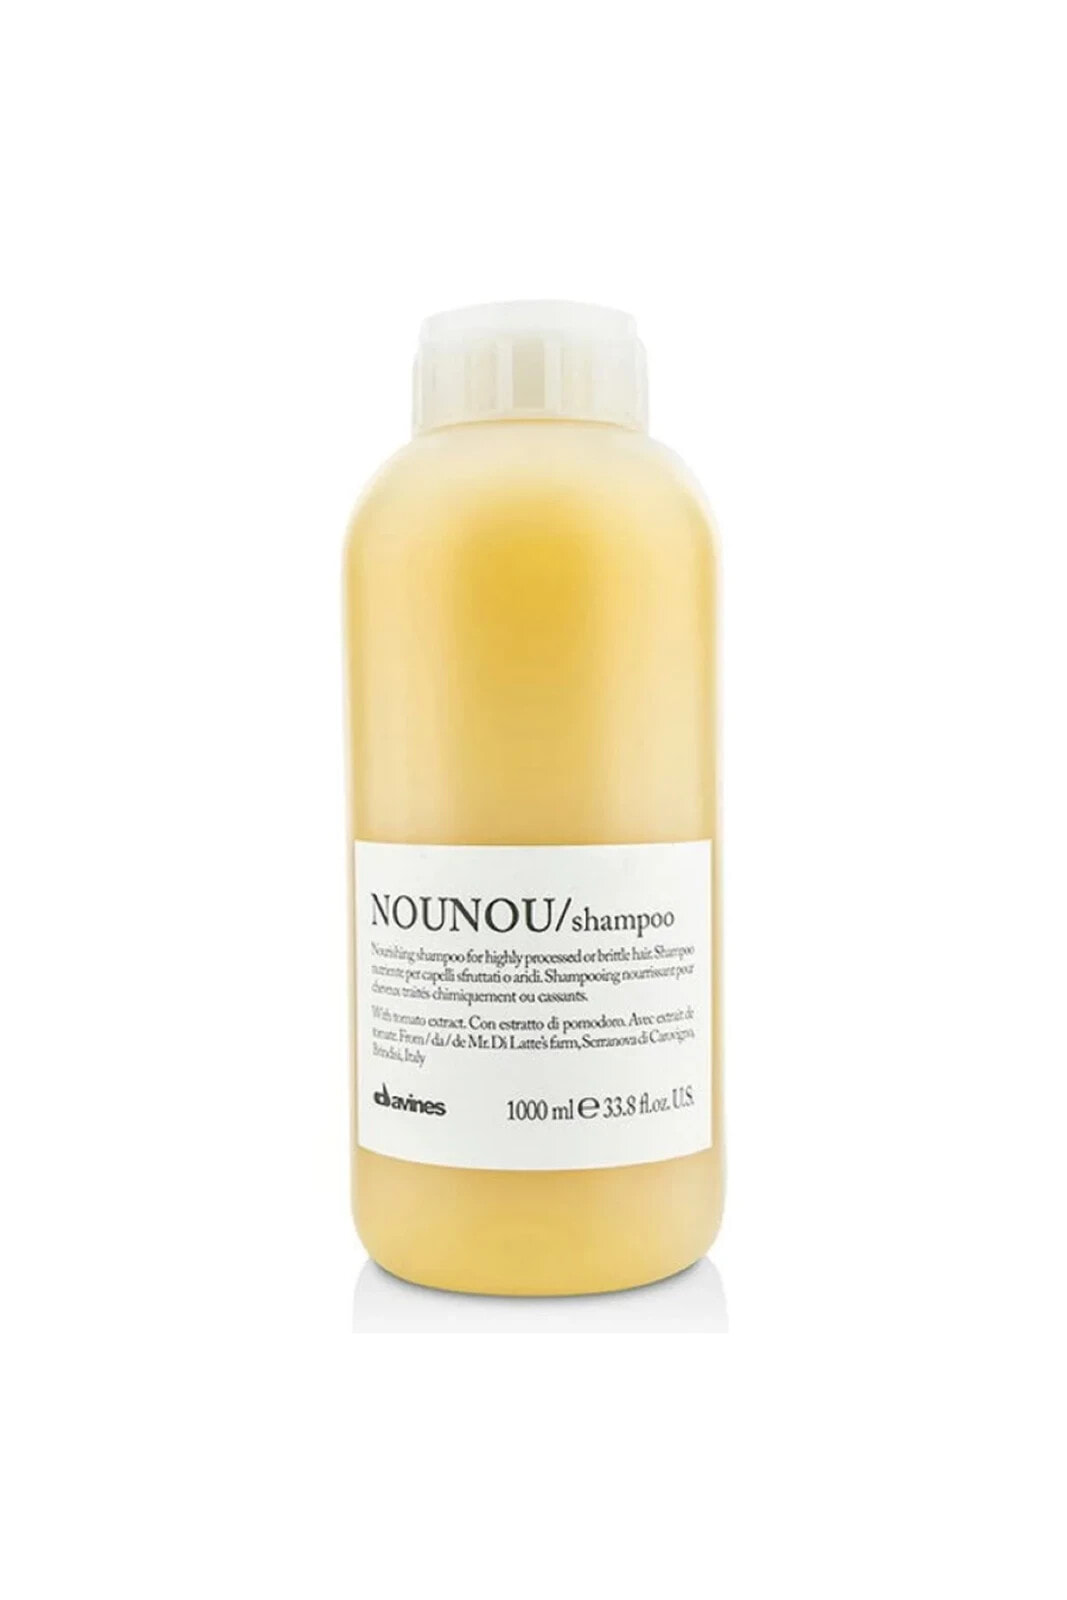 Nounou-Doğal İçerikli Besleyici ve Koruyucu Shampoo 1000ml 33.81 fl oz CYT799464131319632006